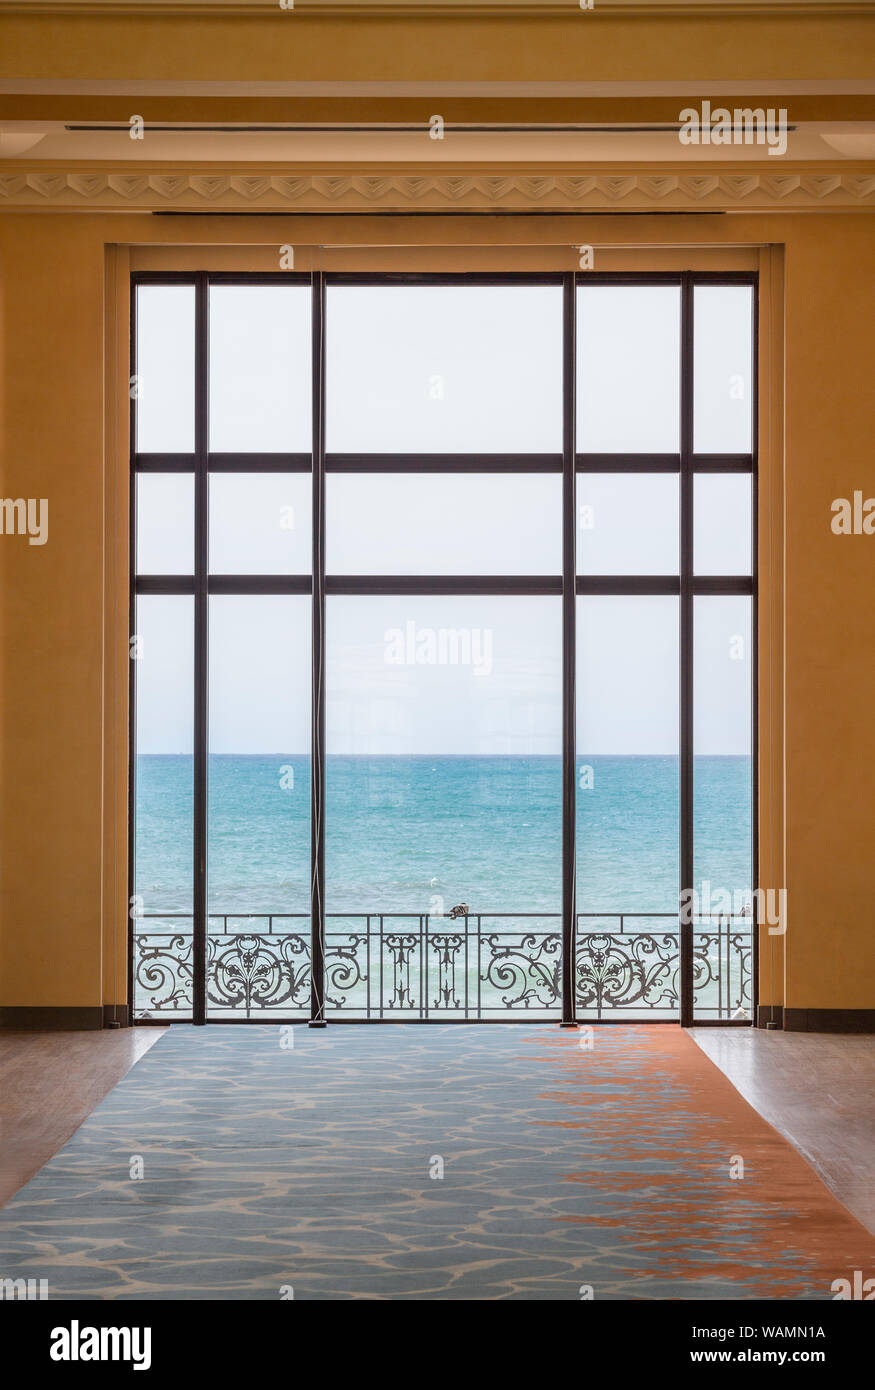 Das im Art déco-Stil, ein Blick auf die Botschafter' Zimmer in der Städtischen Casino von Biarritz (Atlantische Pyrenäen Aquitaine - Frankreich) Stockfoto